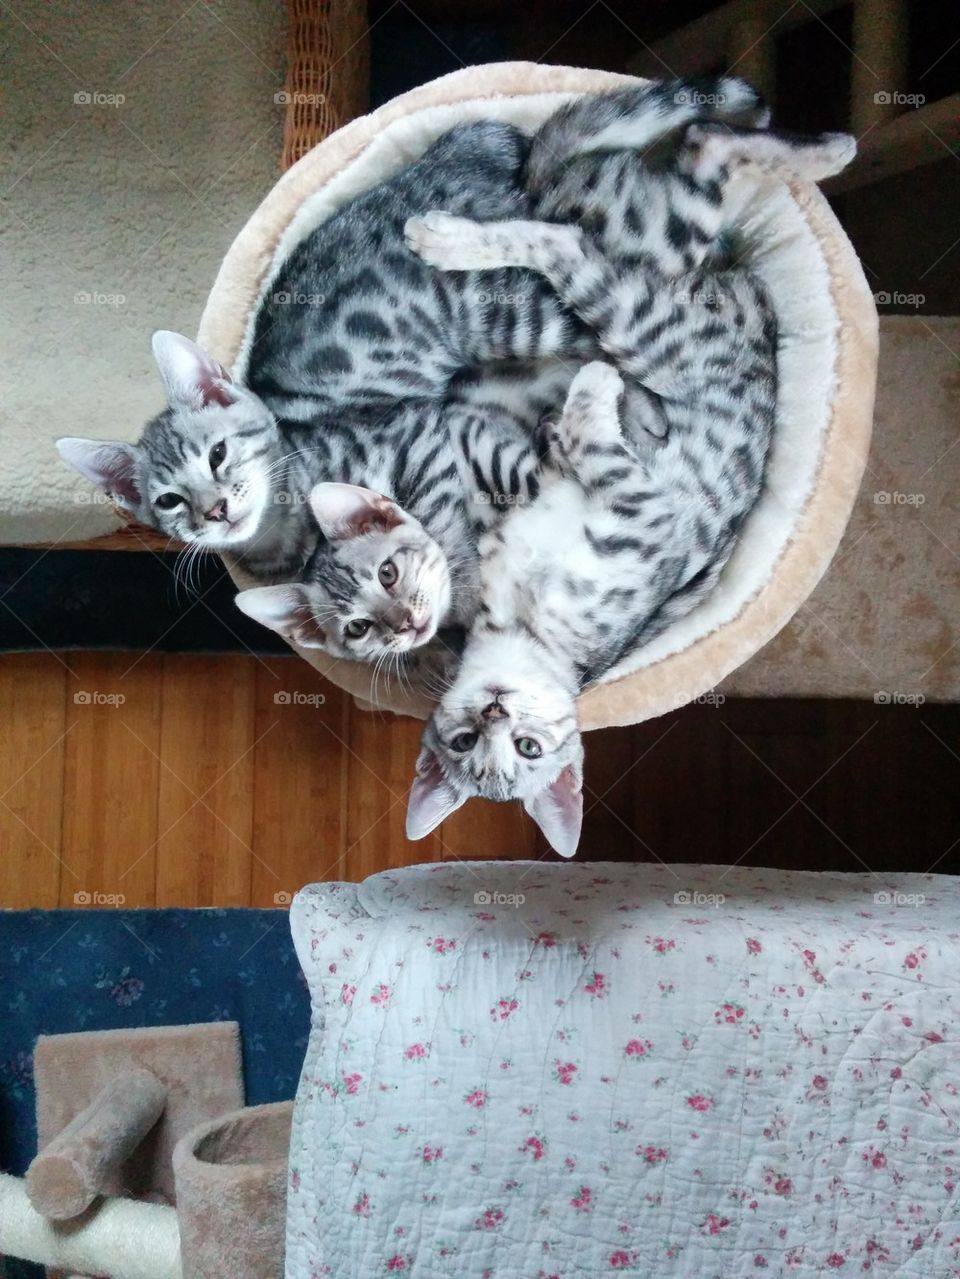 Three kittens